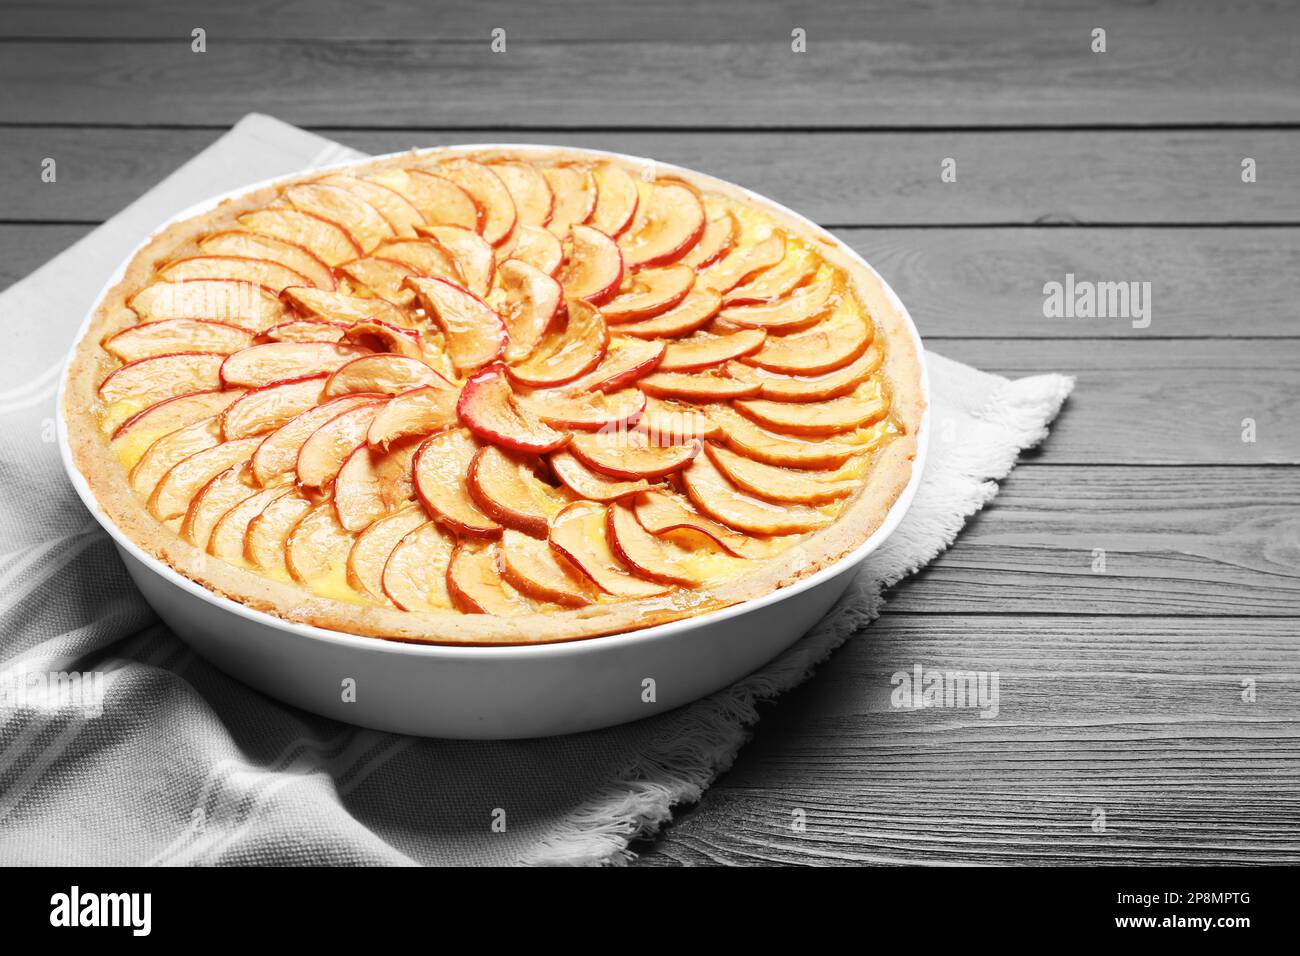 Tasty apple pie on grey wooden table Stock Photo